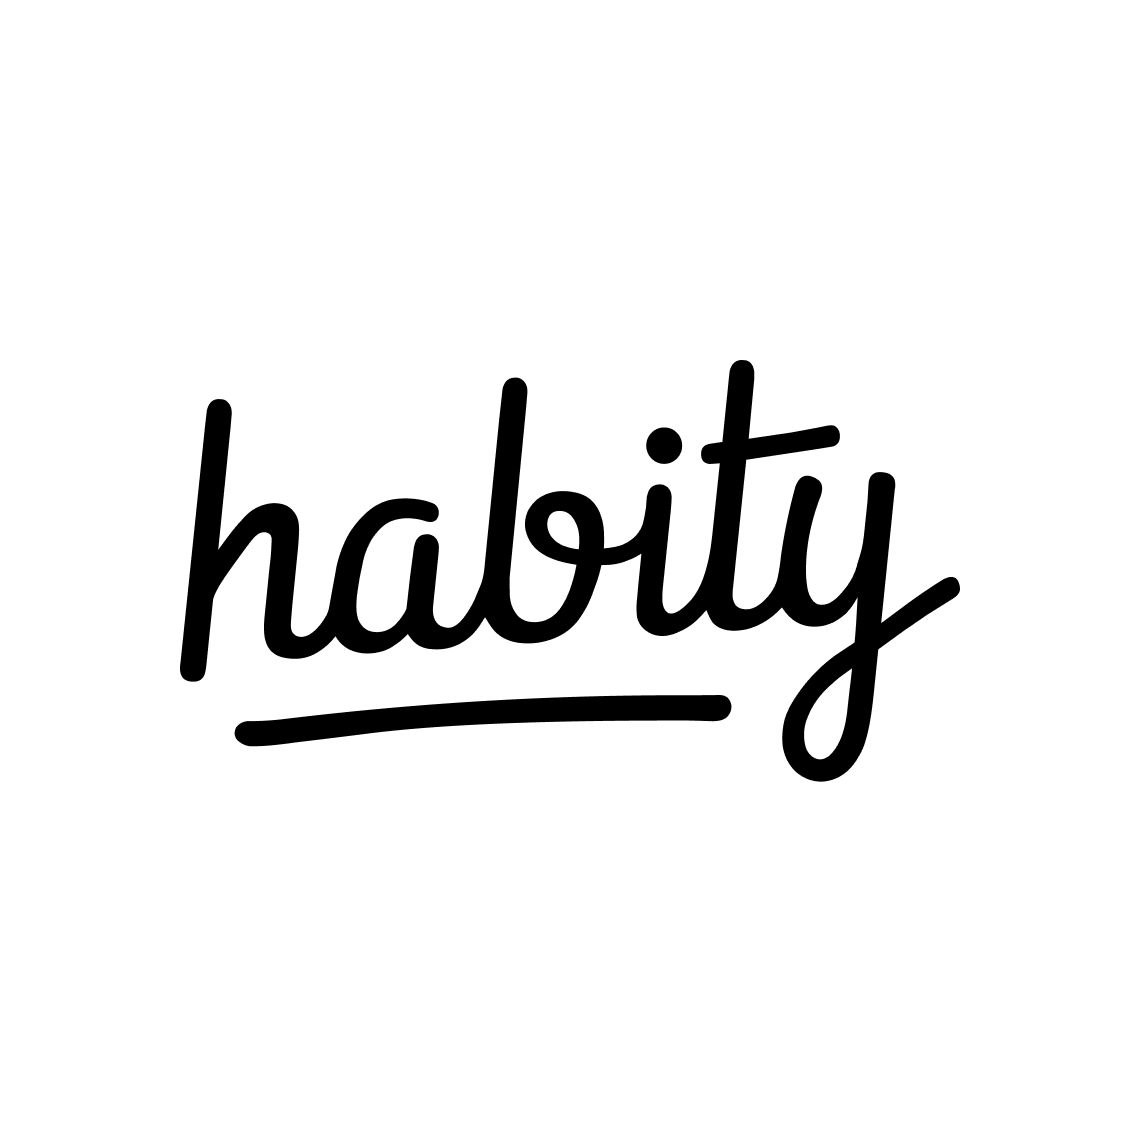 Habity